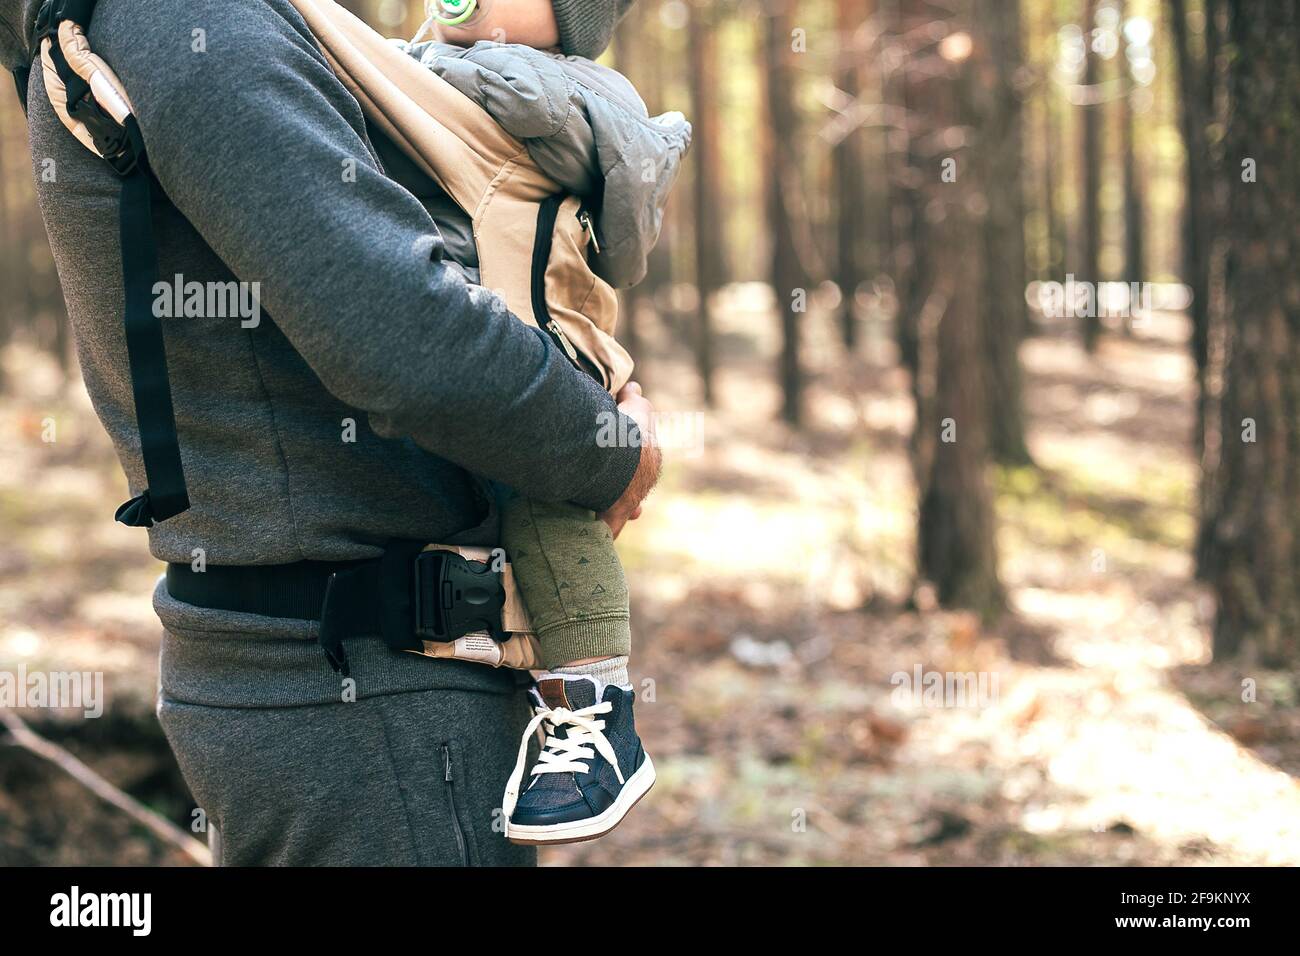 Padre che porta il suo bambino in borsa ergo. Stile di vita, momento autentico. Concetto di comunione, cura, amore dei genitori Foto Stock